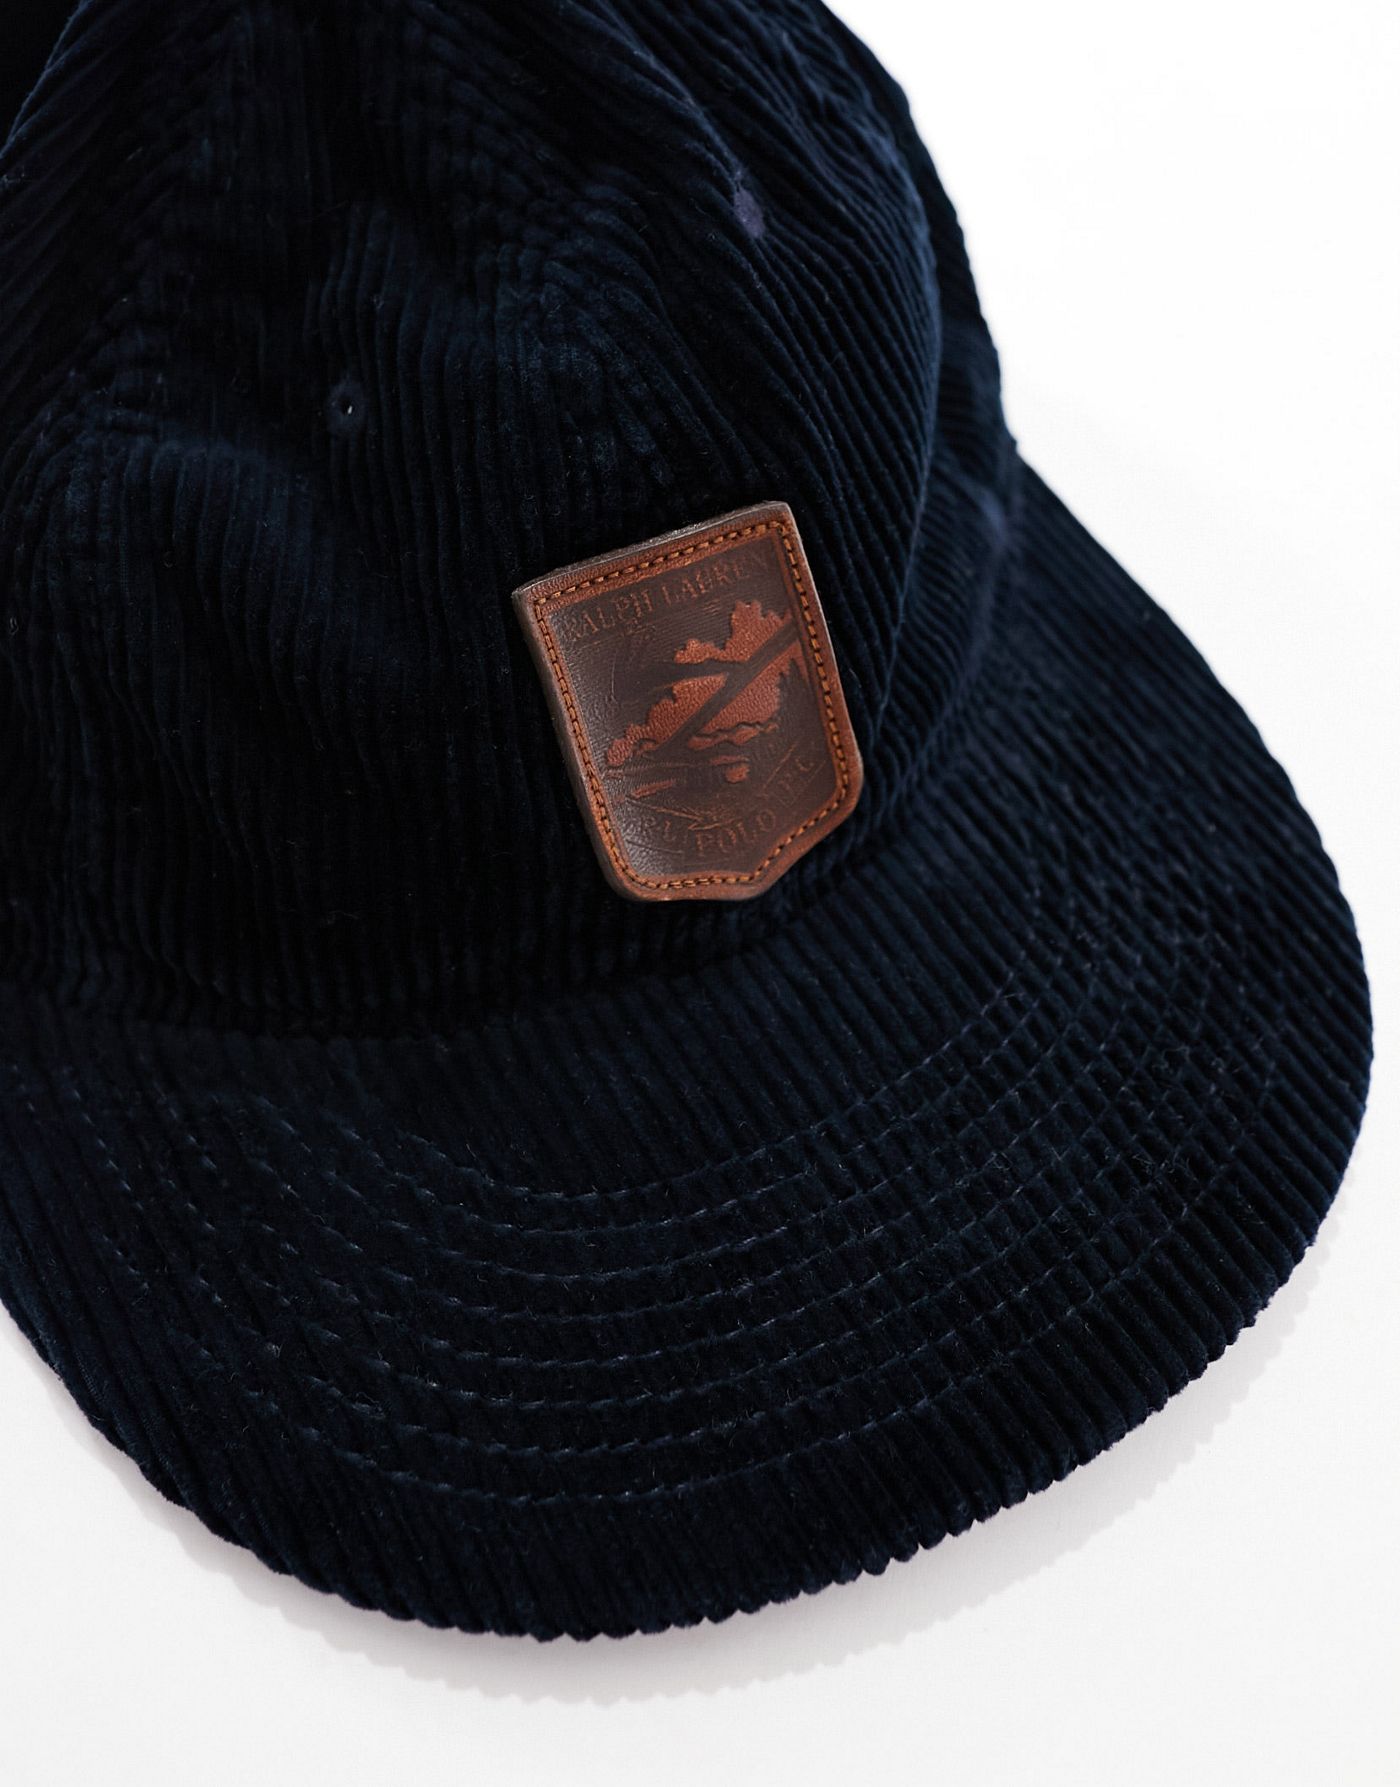 Polo Ralph Lauren cord cap with logo in navy